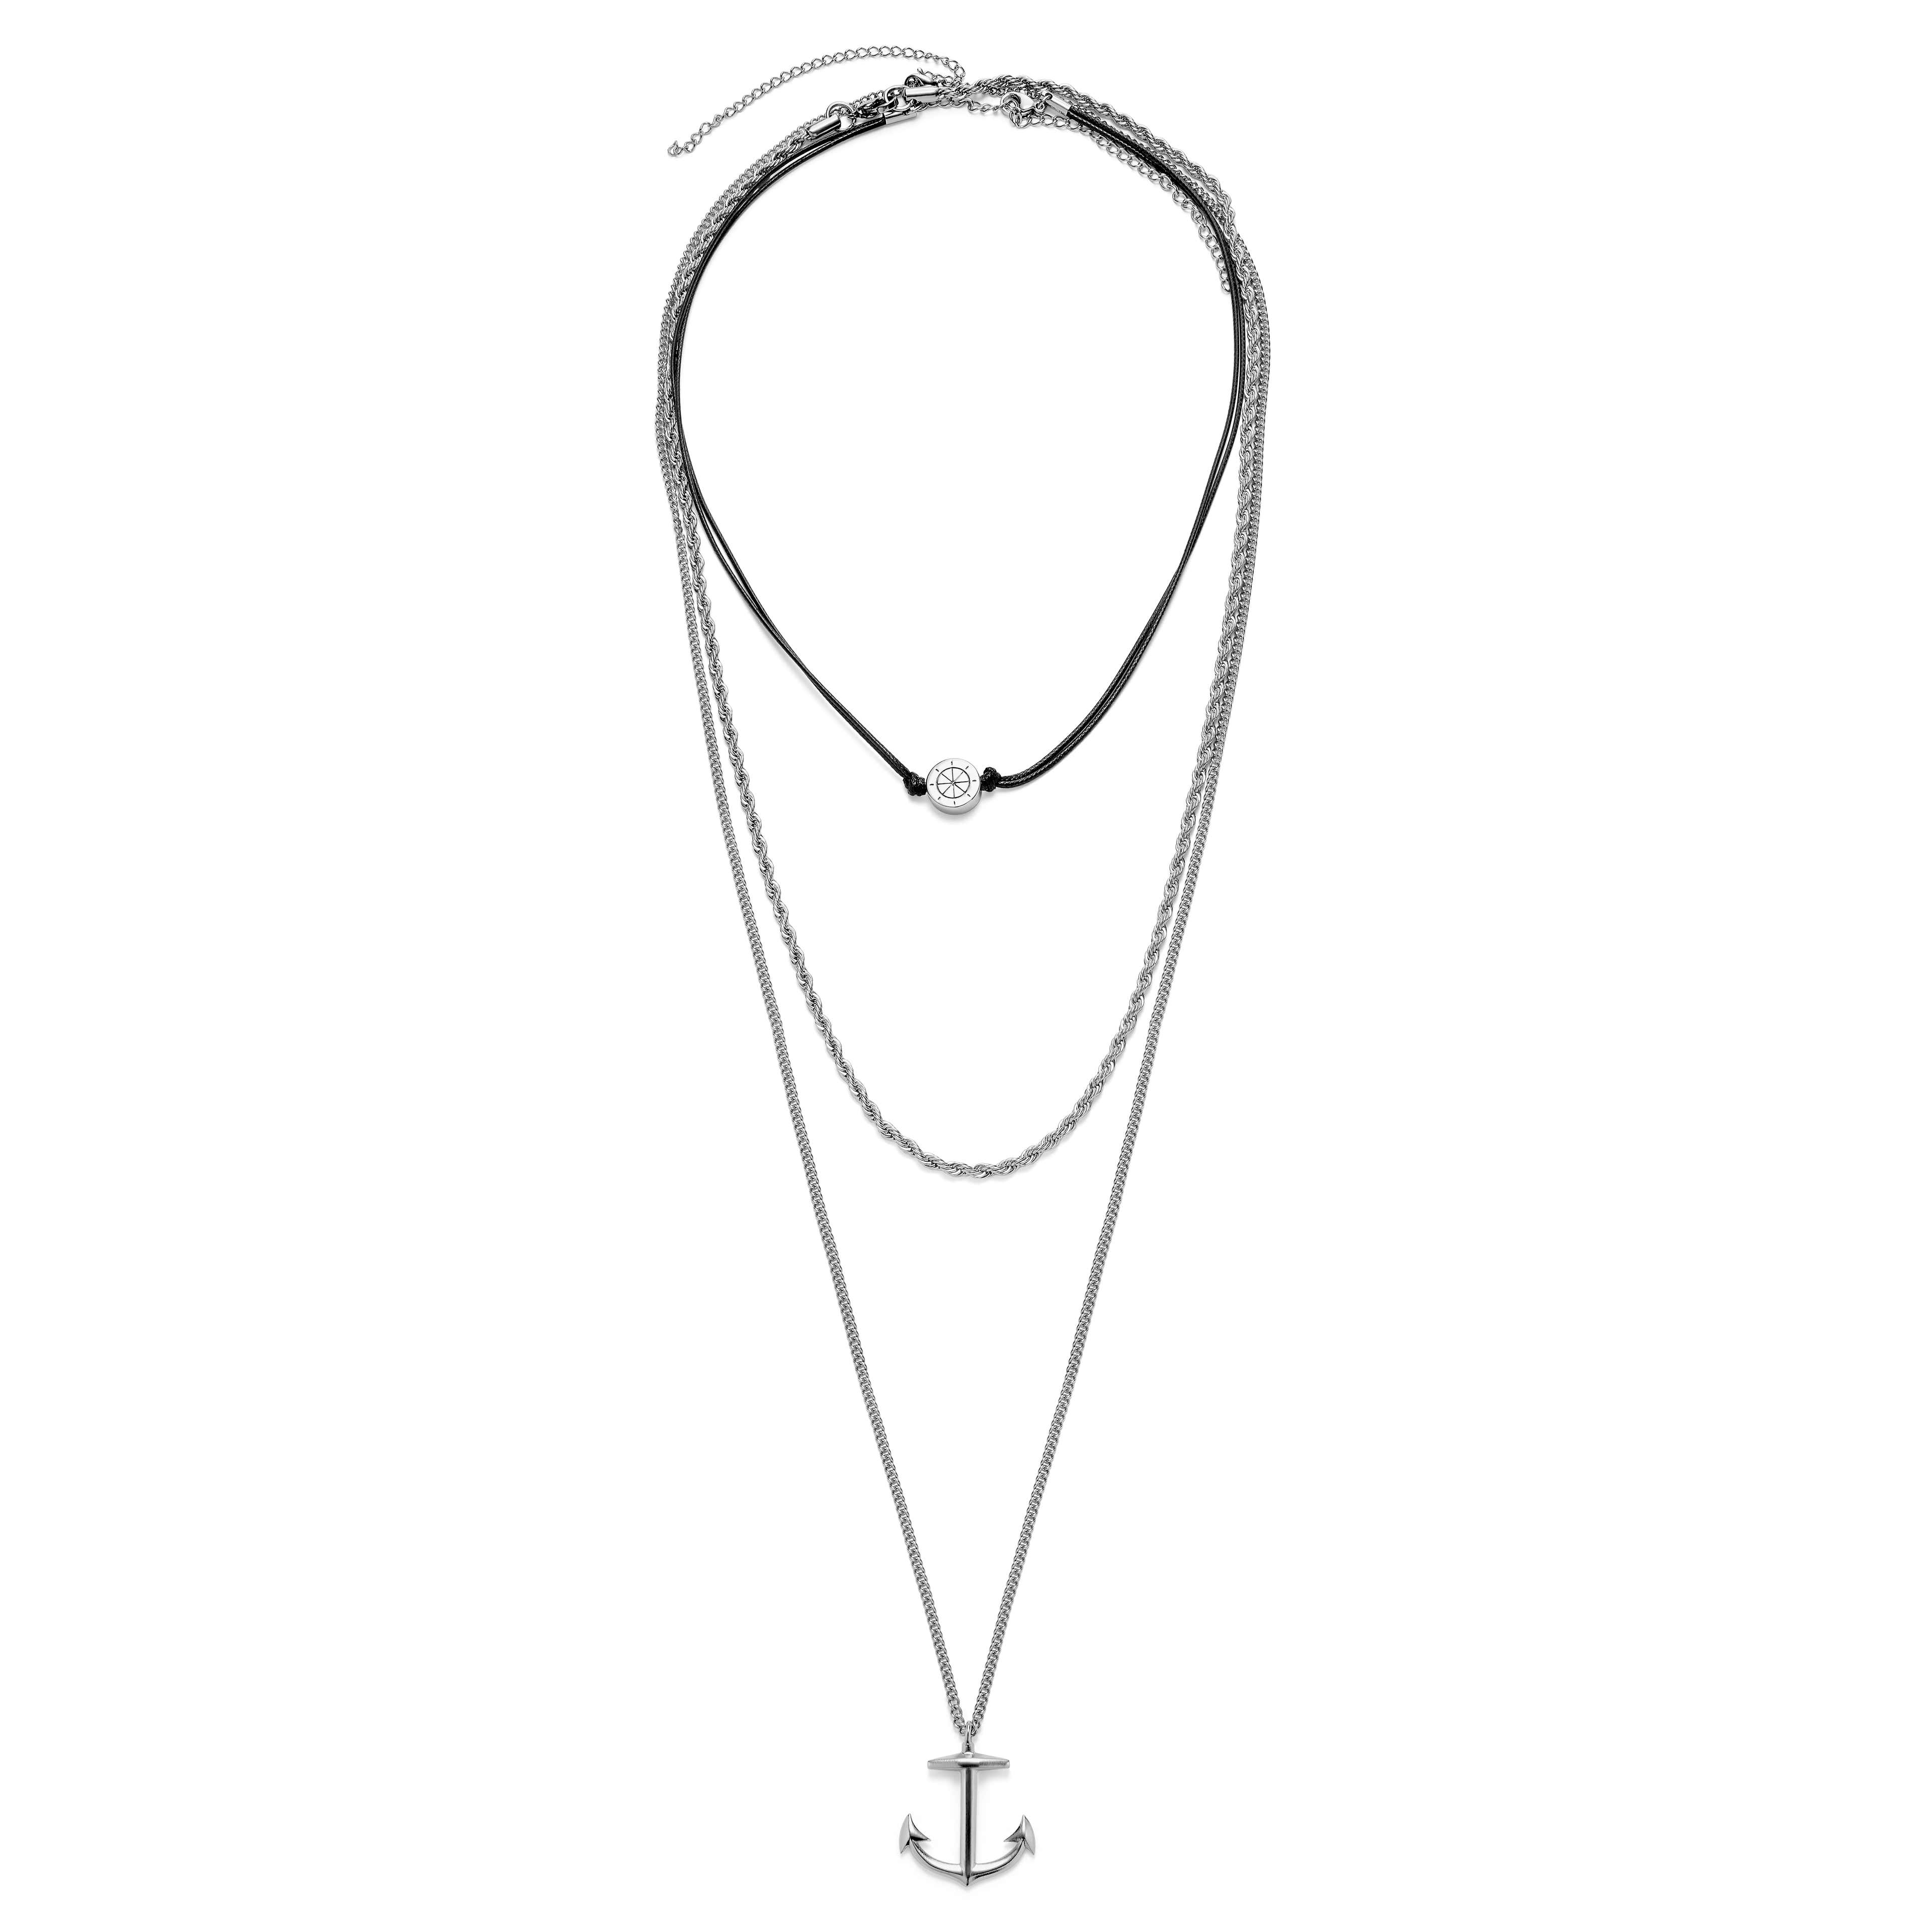 Srebrzysty zestaw naszyjników z łańcuszkiem linką, z kotwicą i kołem sterowym